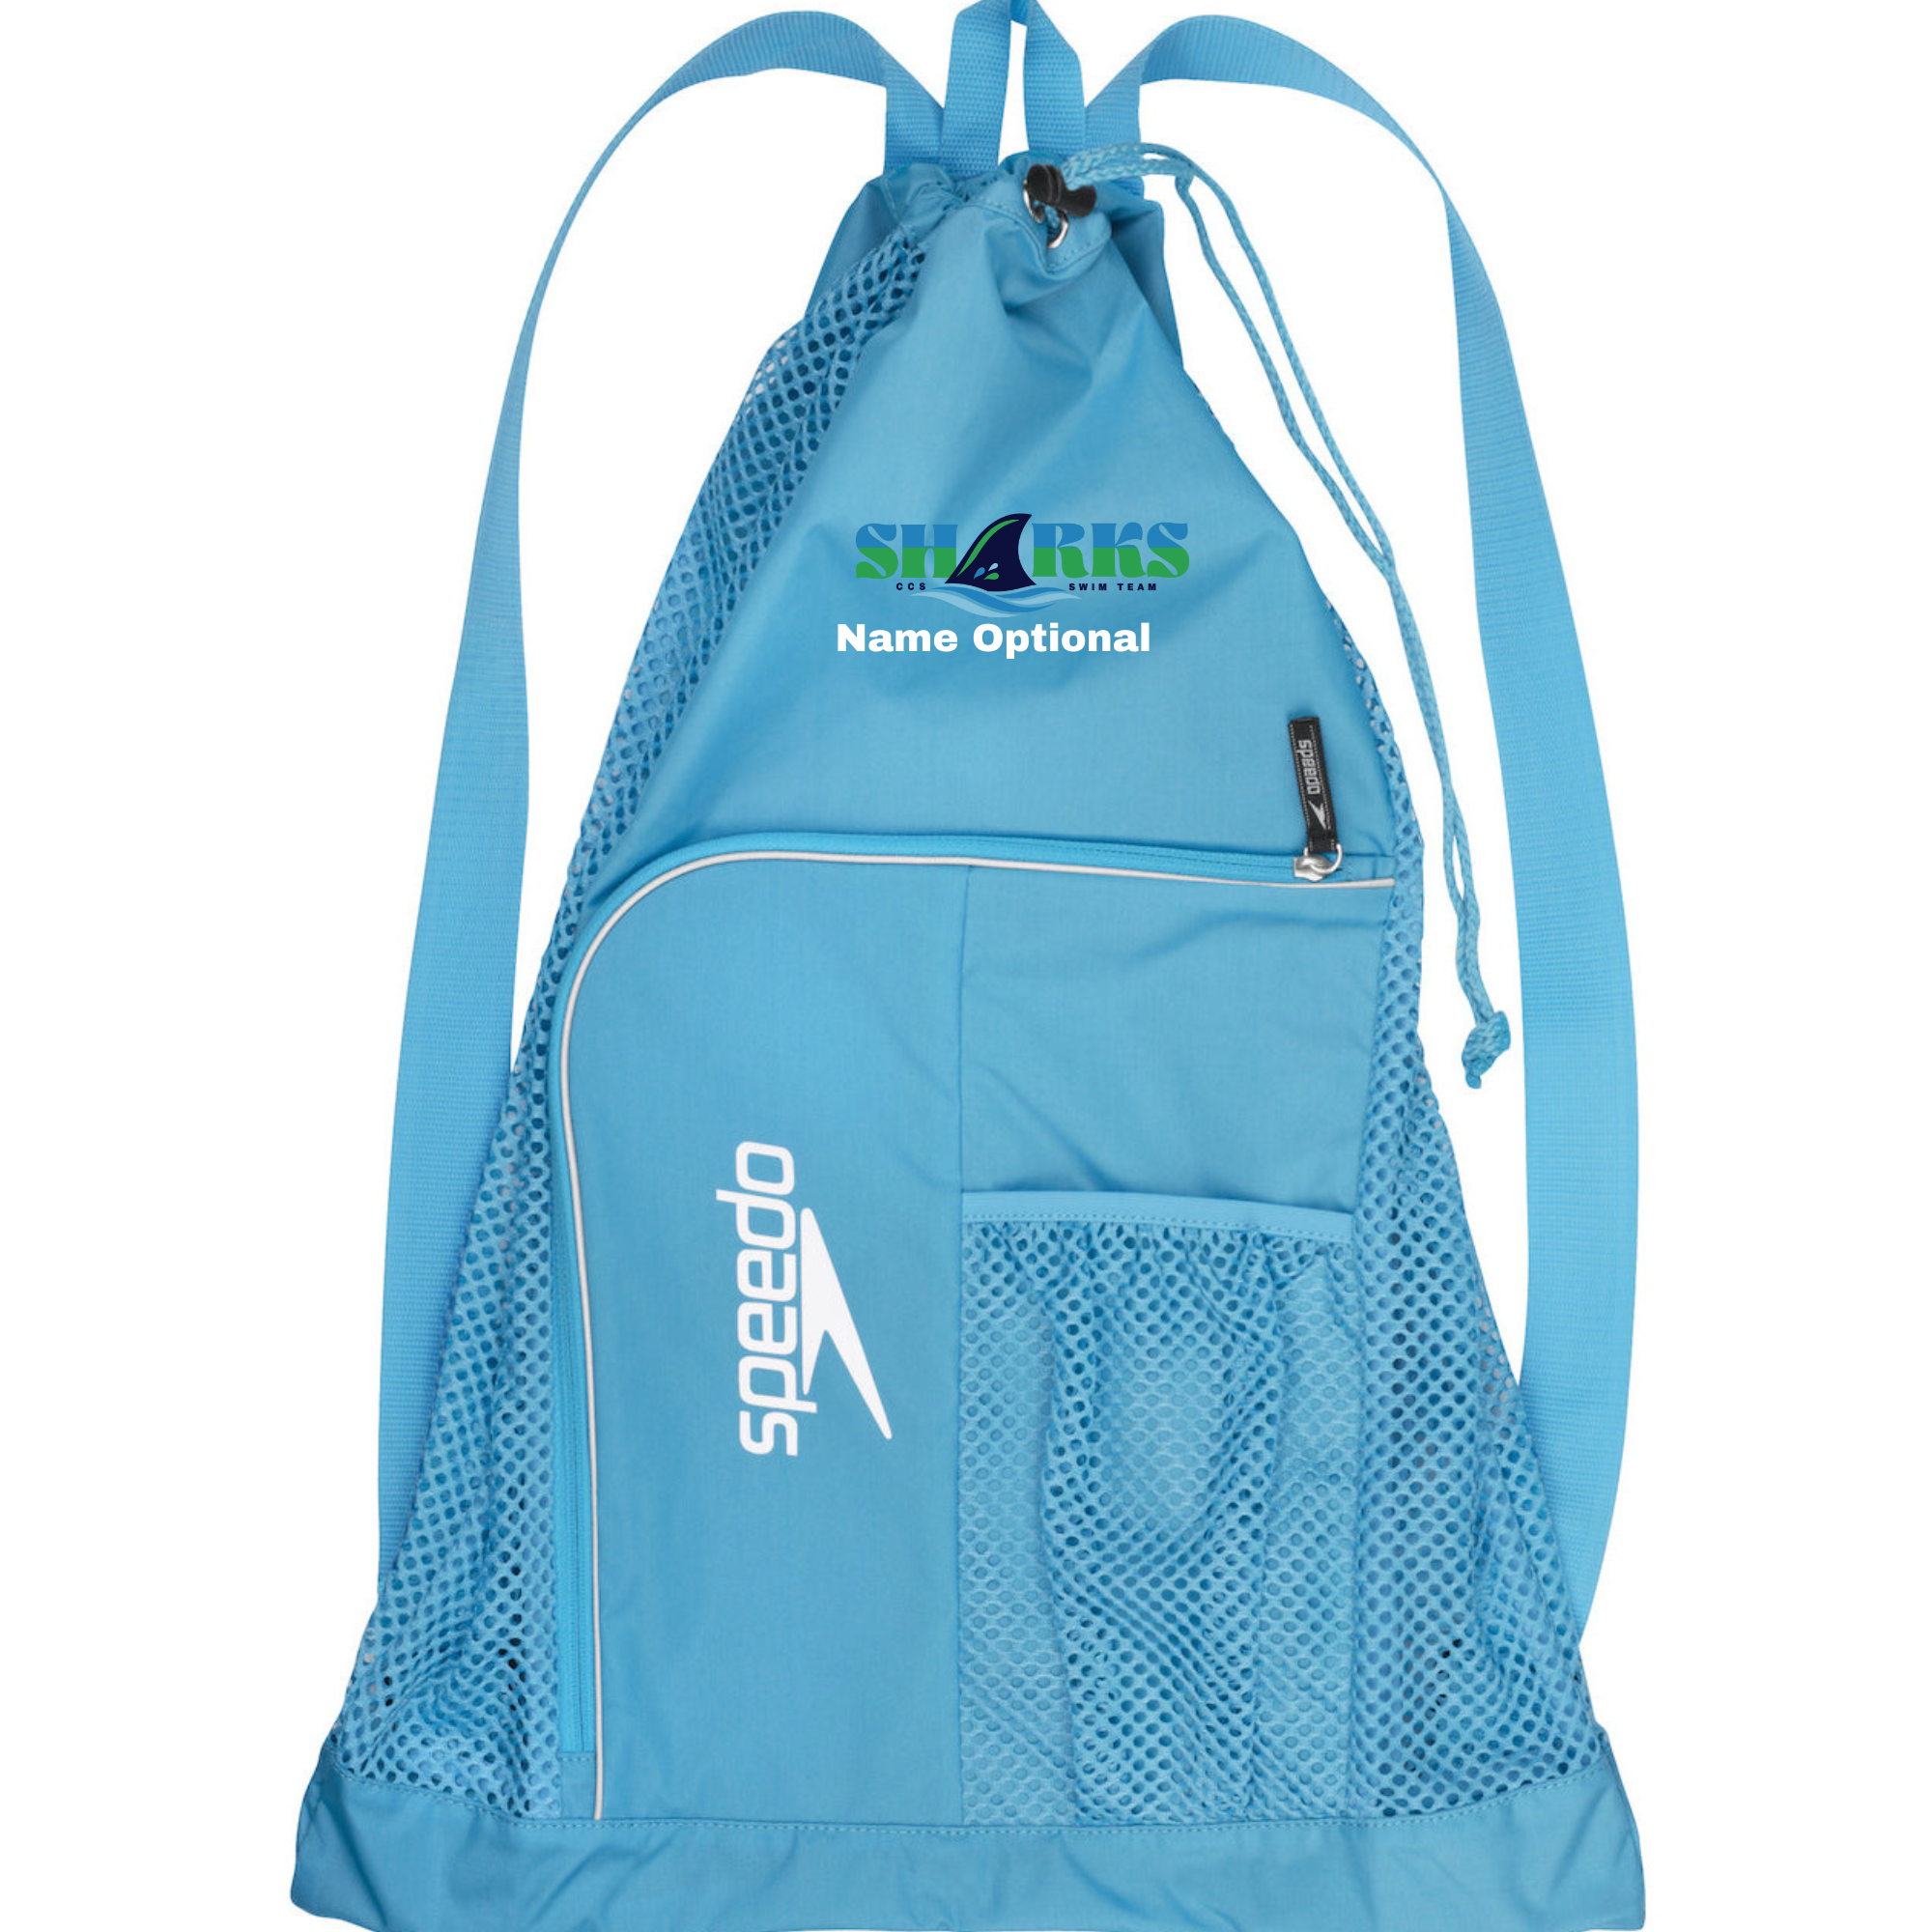 Speedo Deluxe Ventilator Backpack (Customized) - CCOS